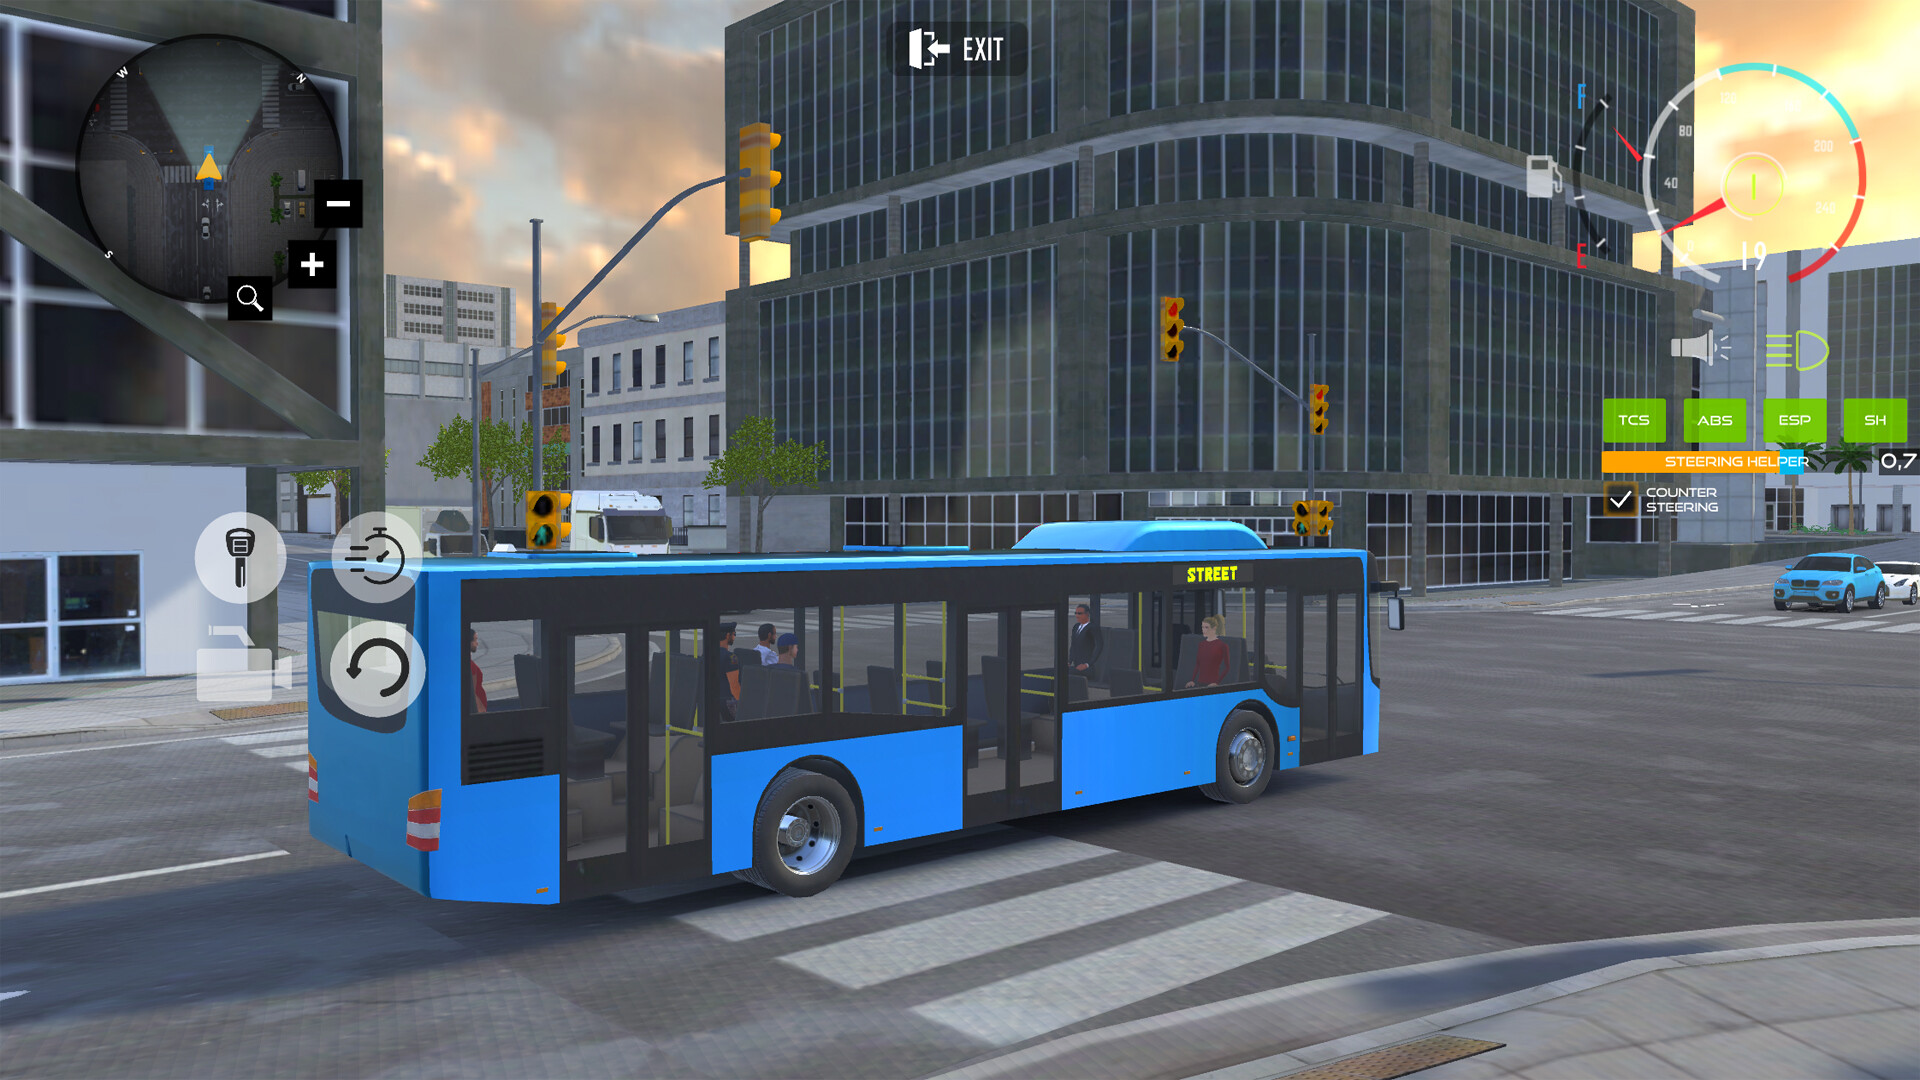 Bus Simulator Car Driving download the last version for mac